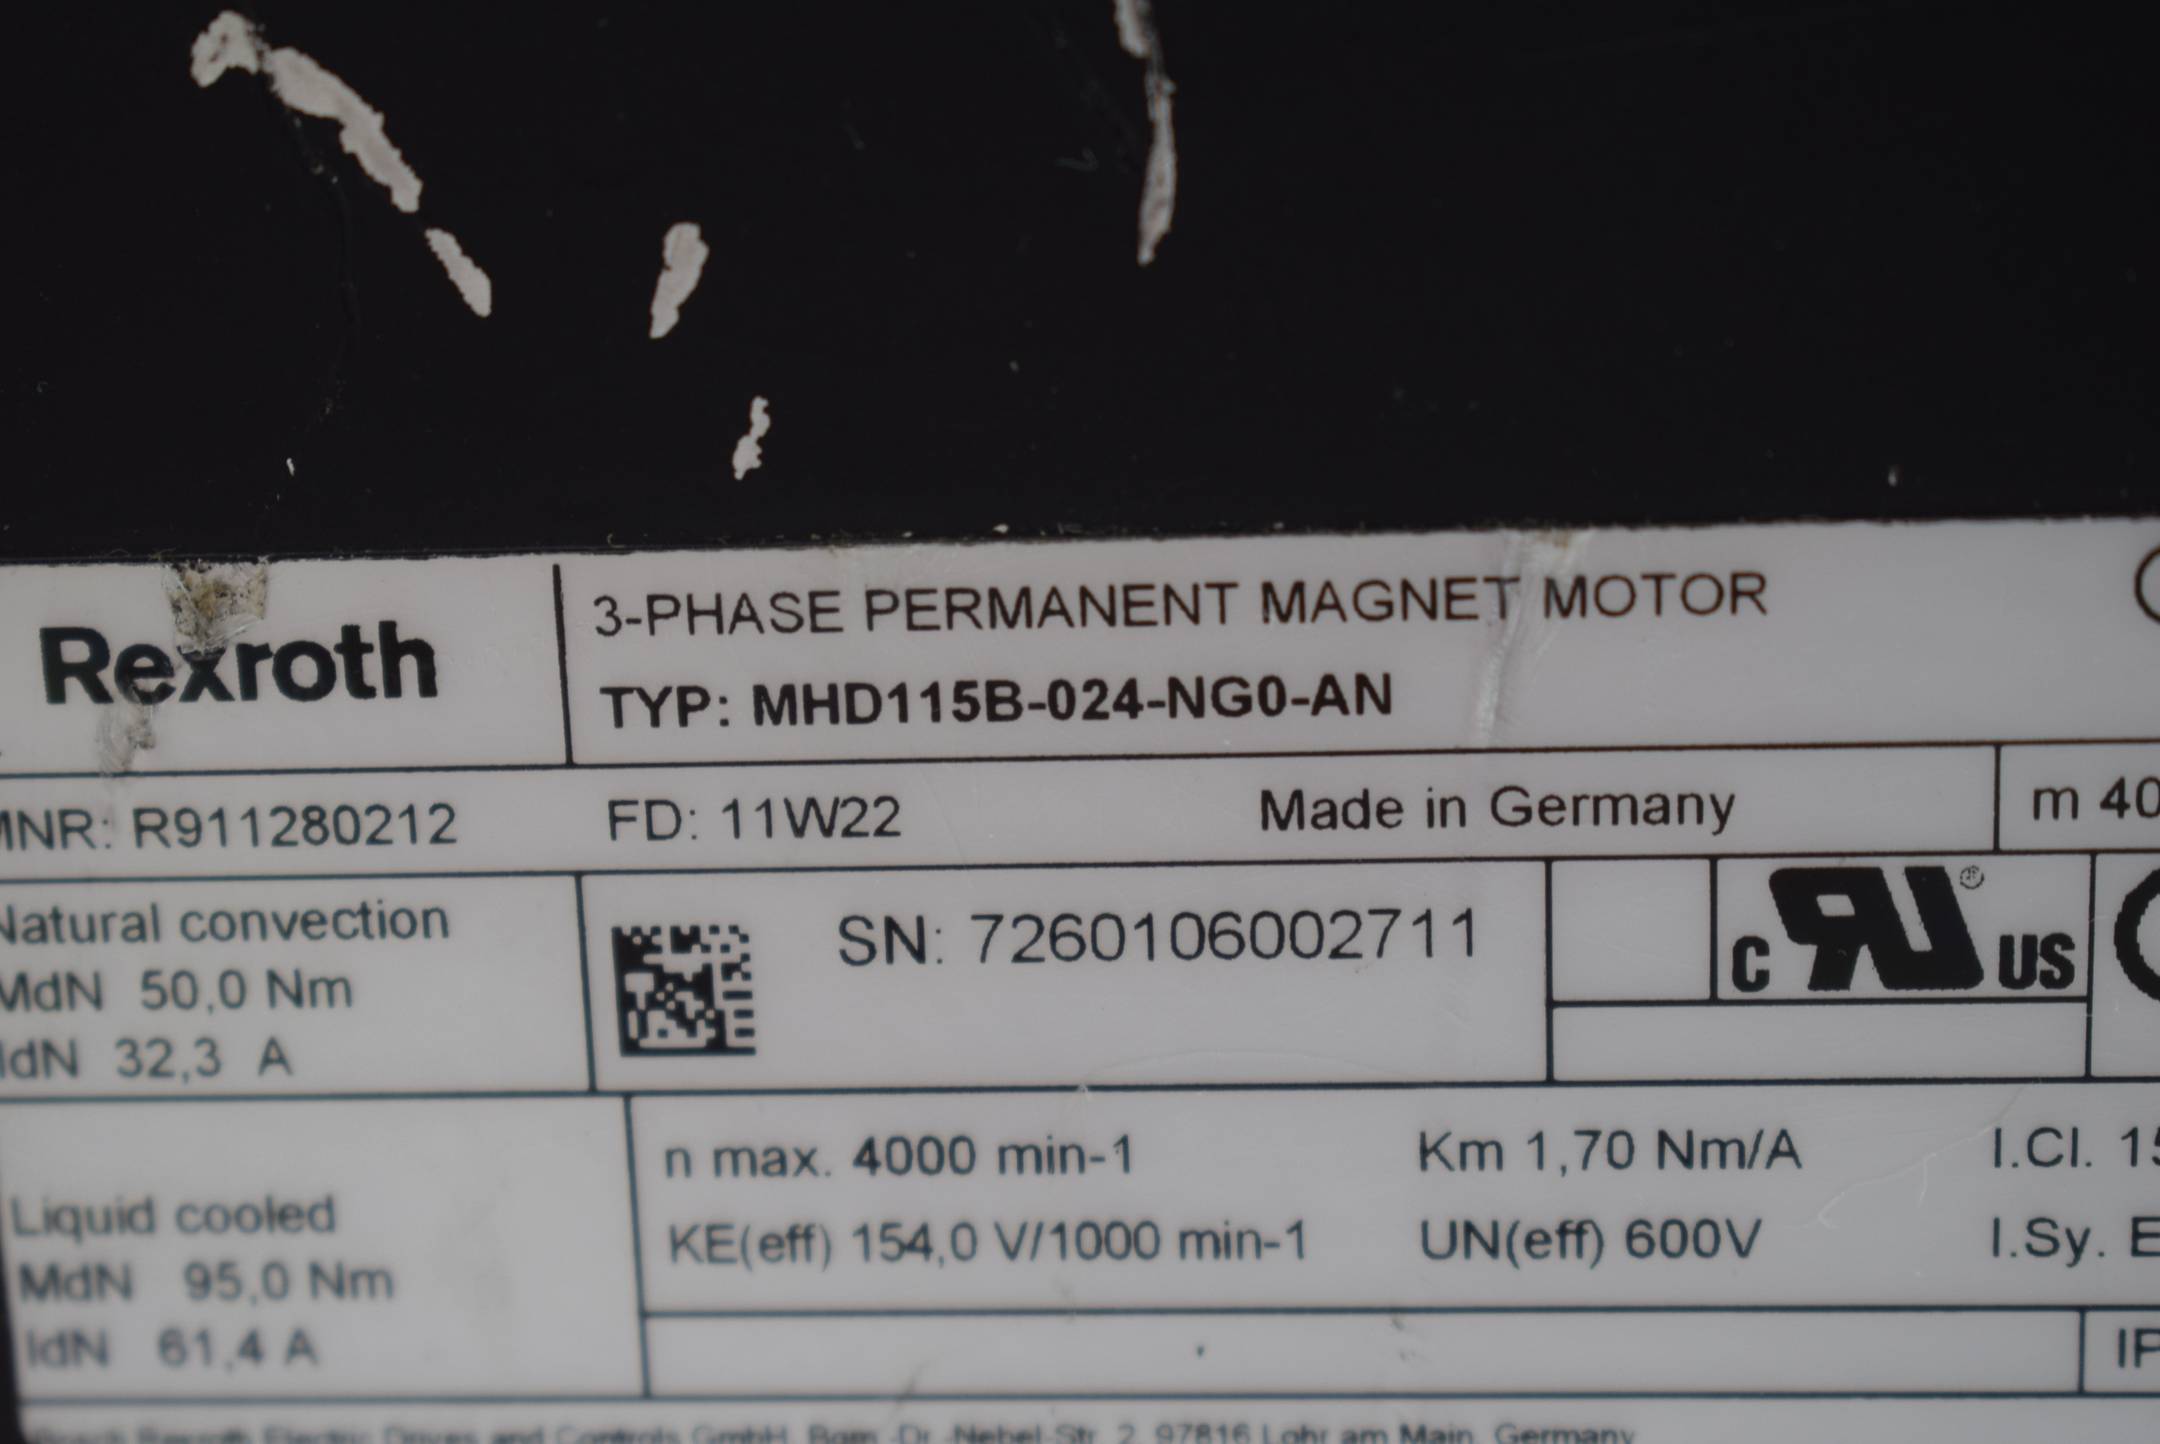 Rexroth Indramat Permanent Magnet Motor MHD115B-024-NG0-AN